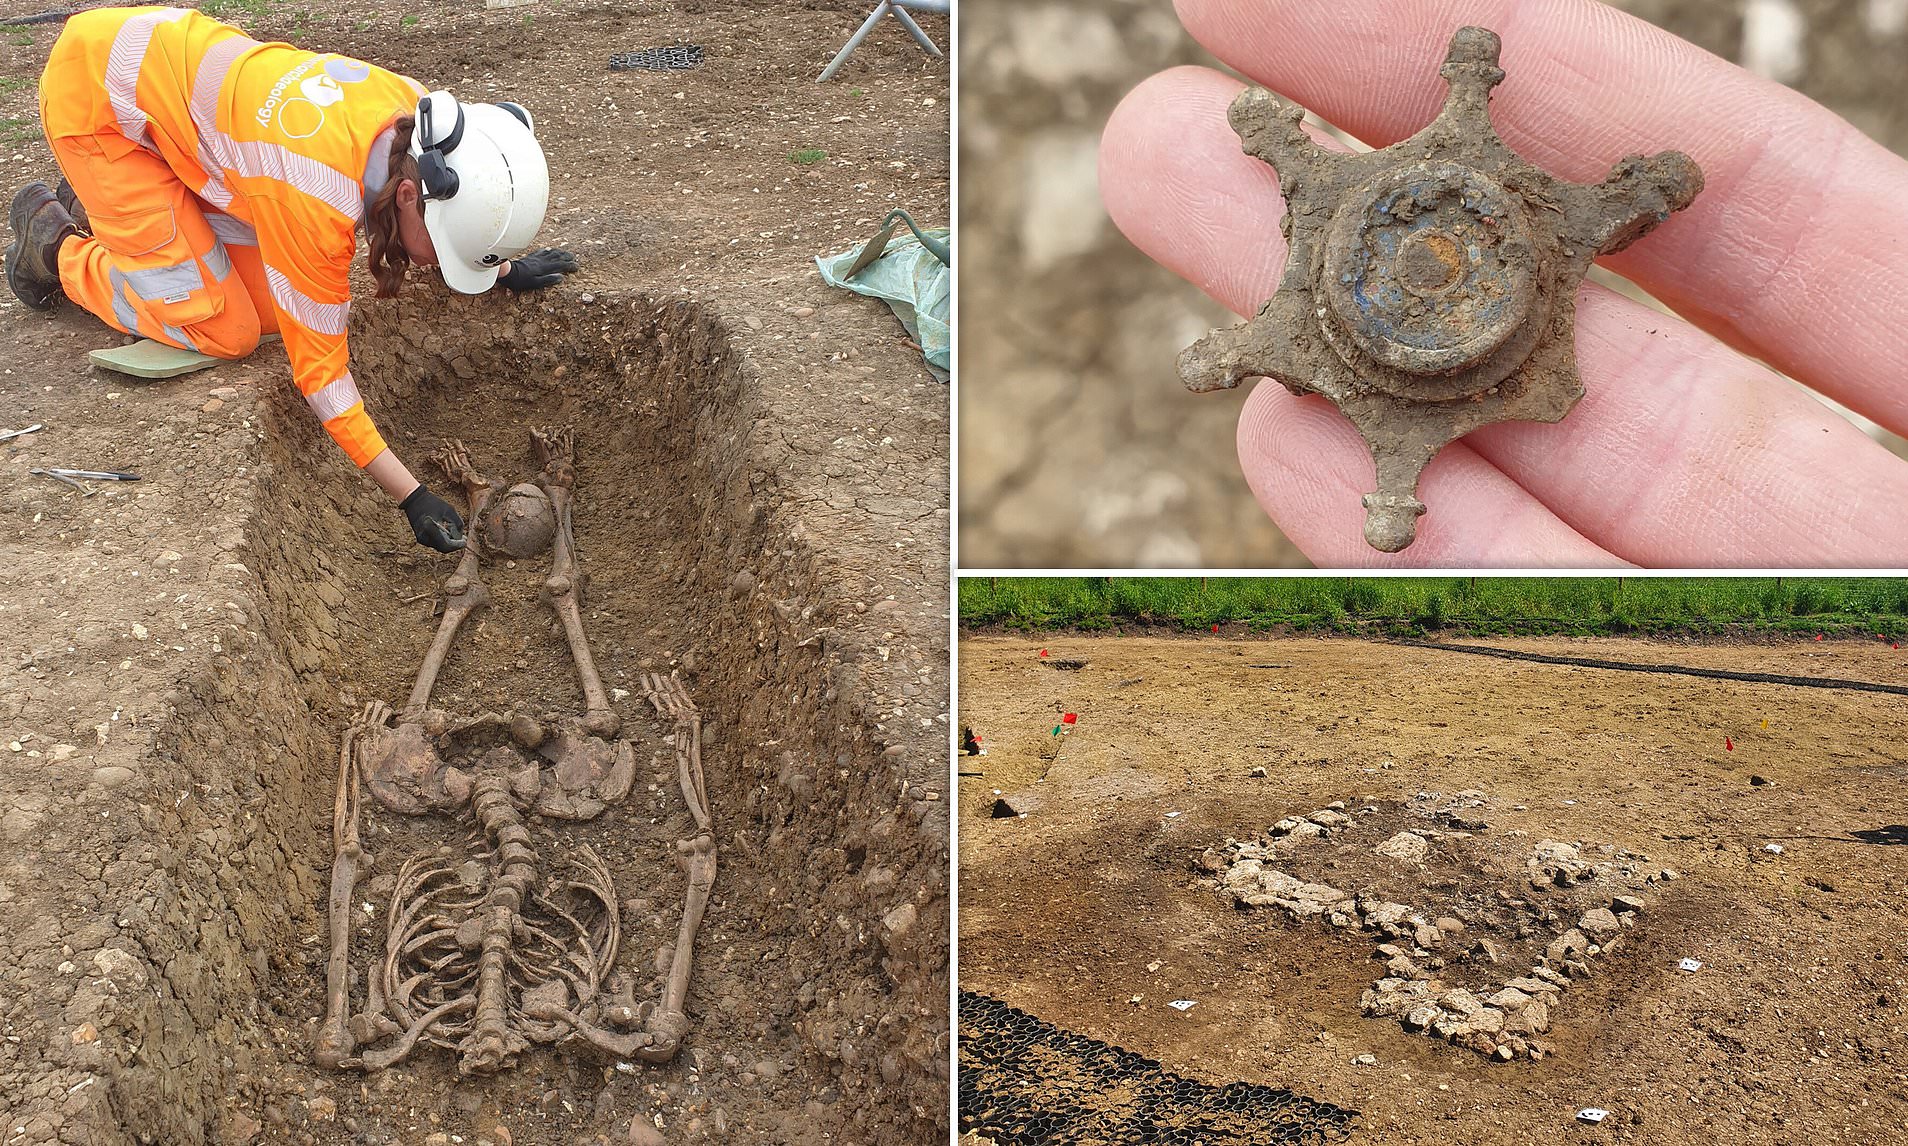 اكتشاف هياكل عظمية مقطوعة الرأس في مقبرة رومانية في بريطانيا watanserb.com